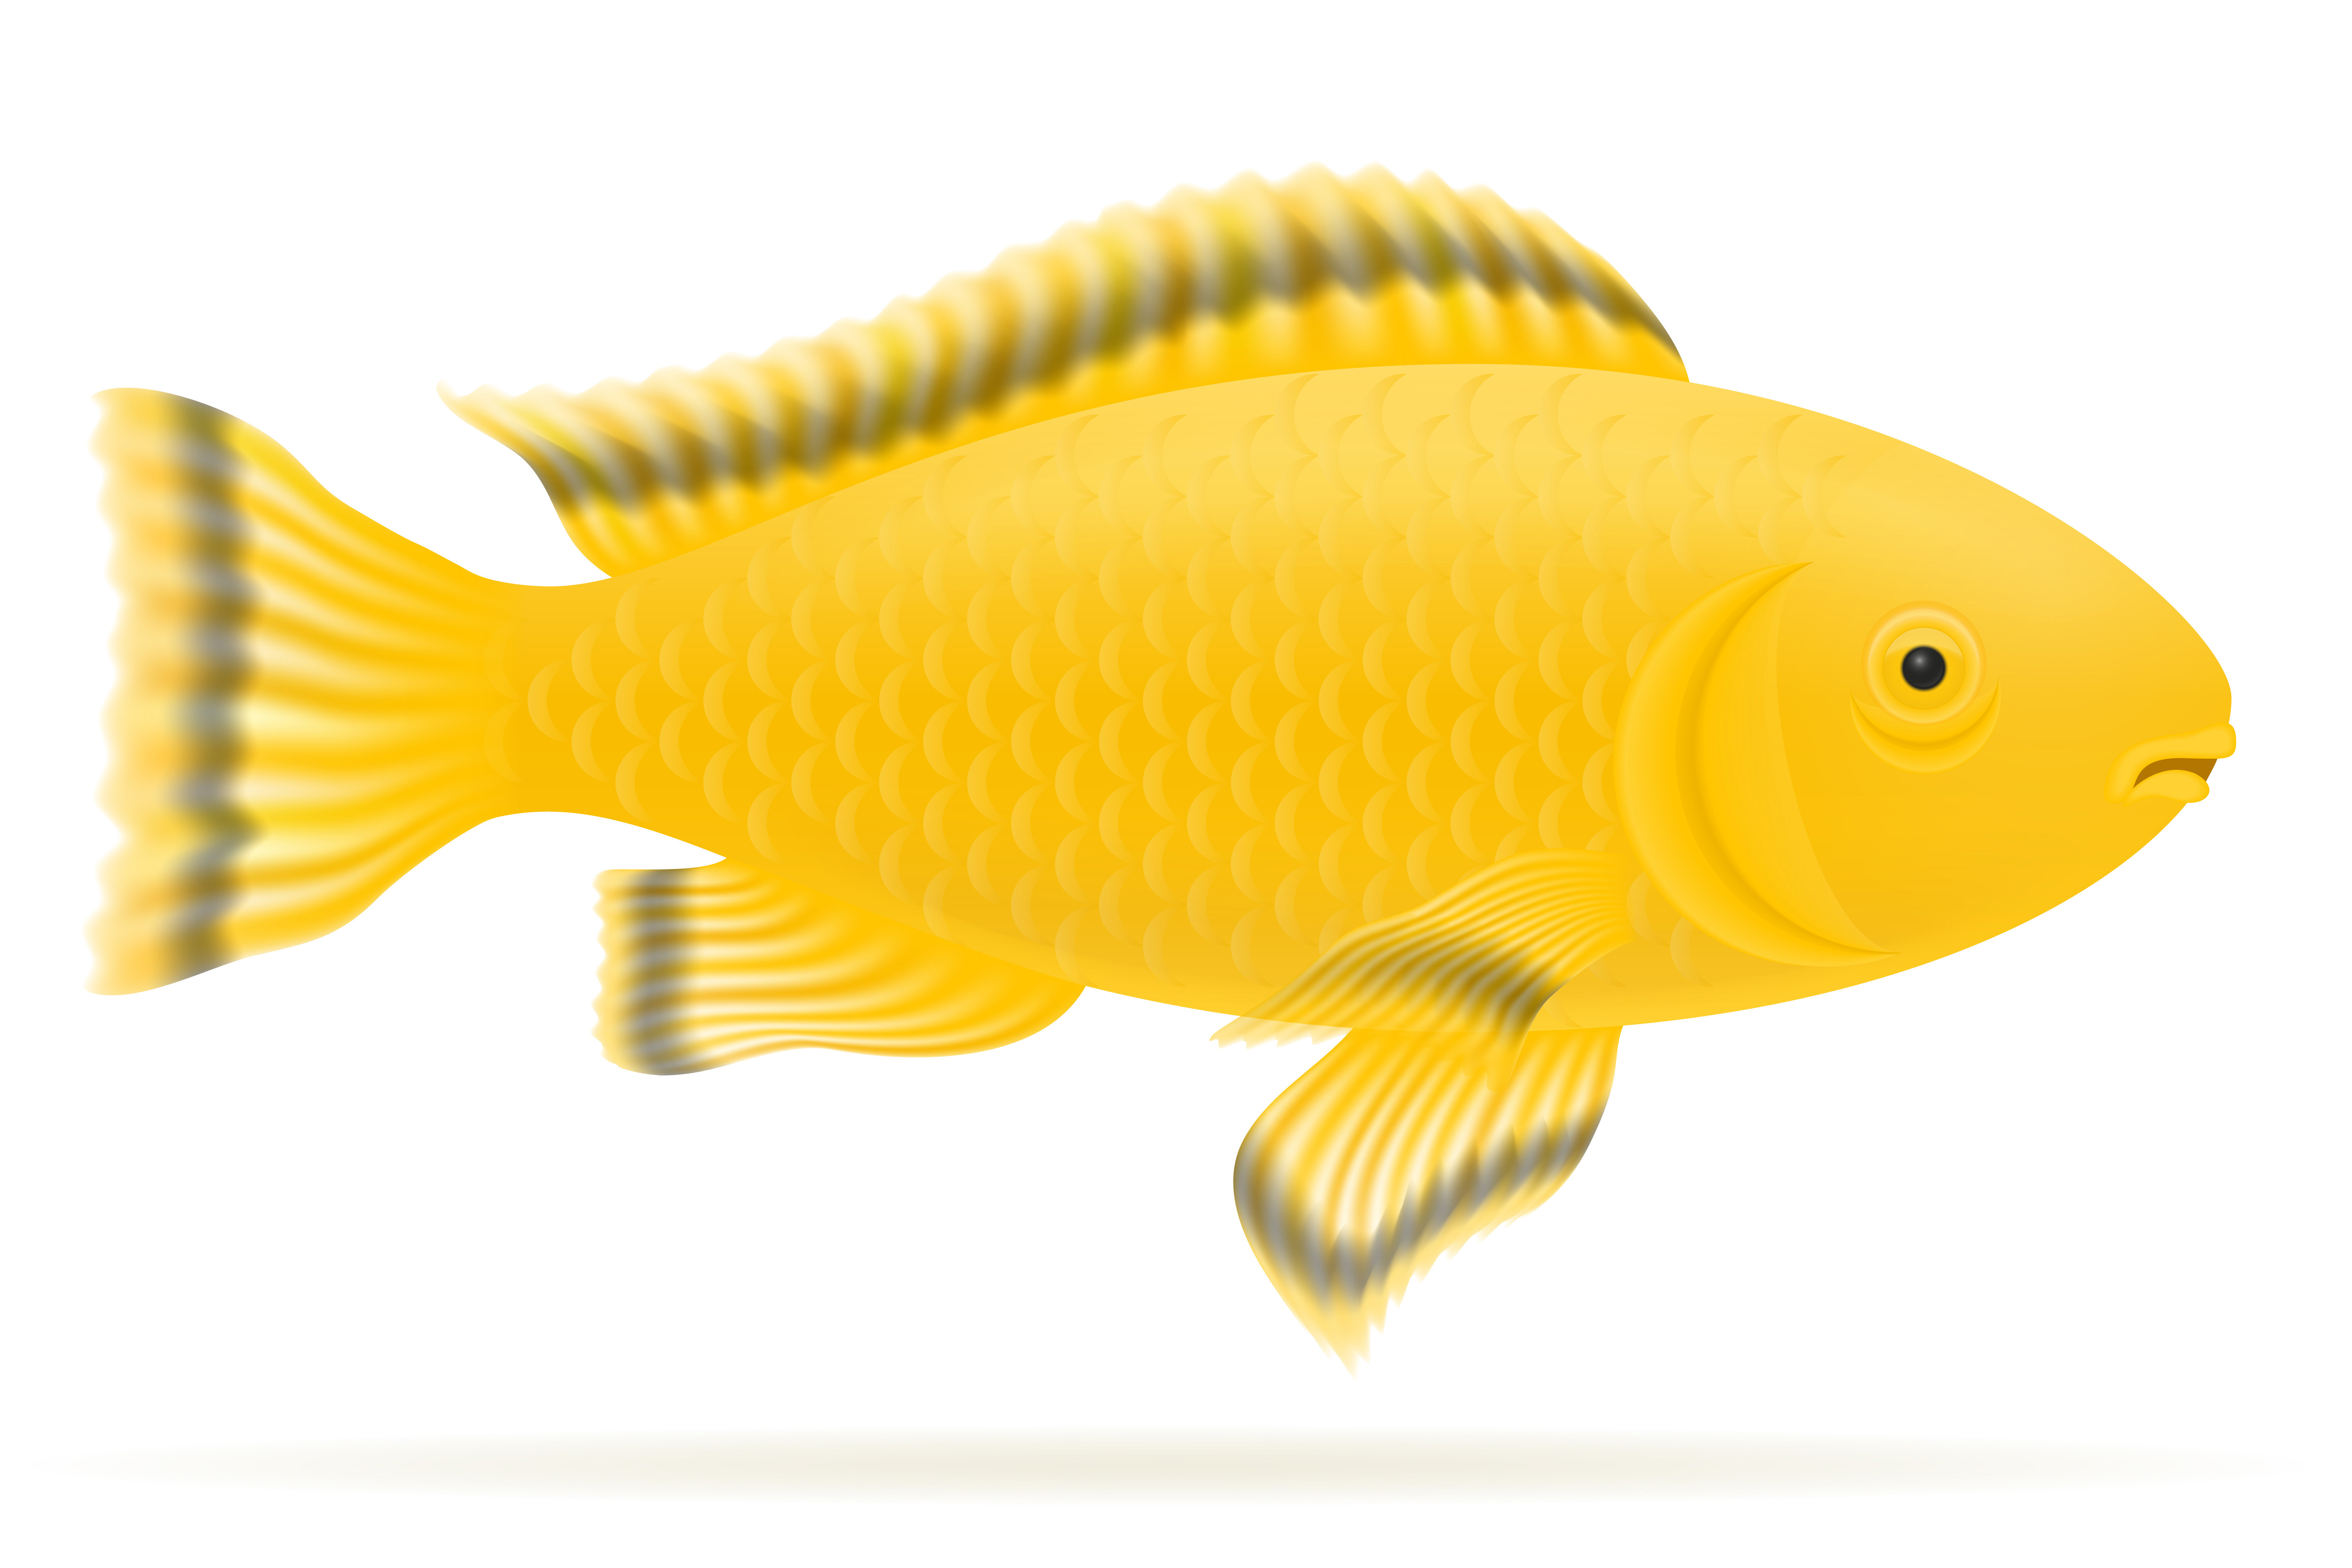 Download aquarium fish vector illustration - Download Free Vectors ...